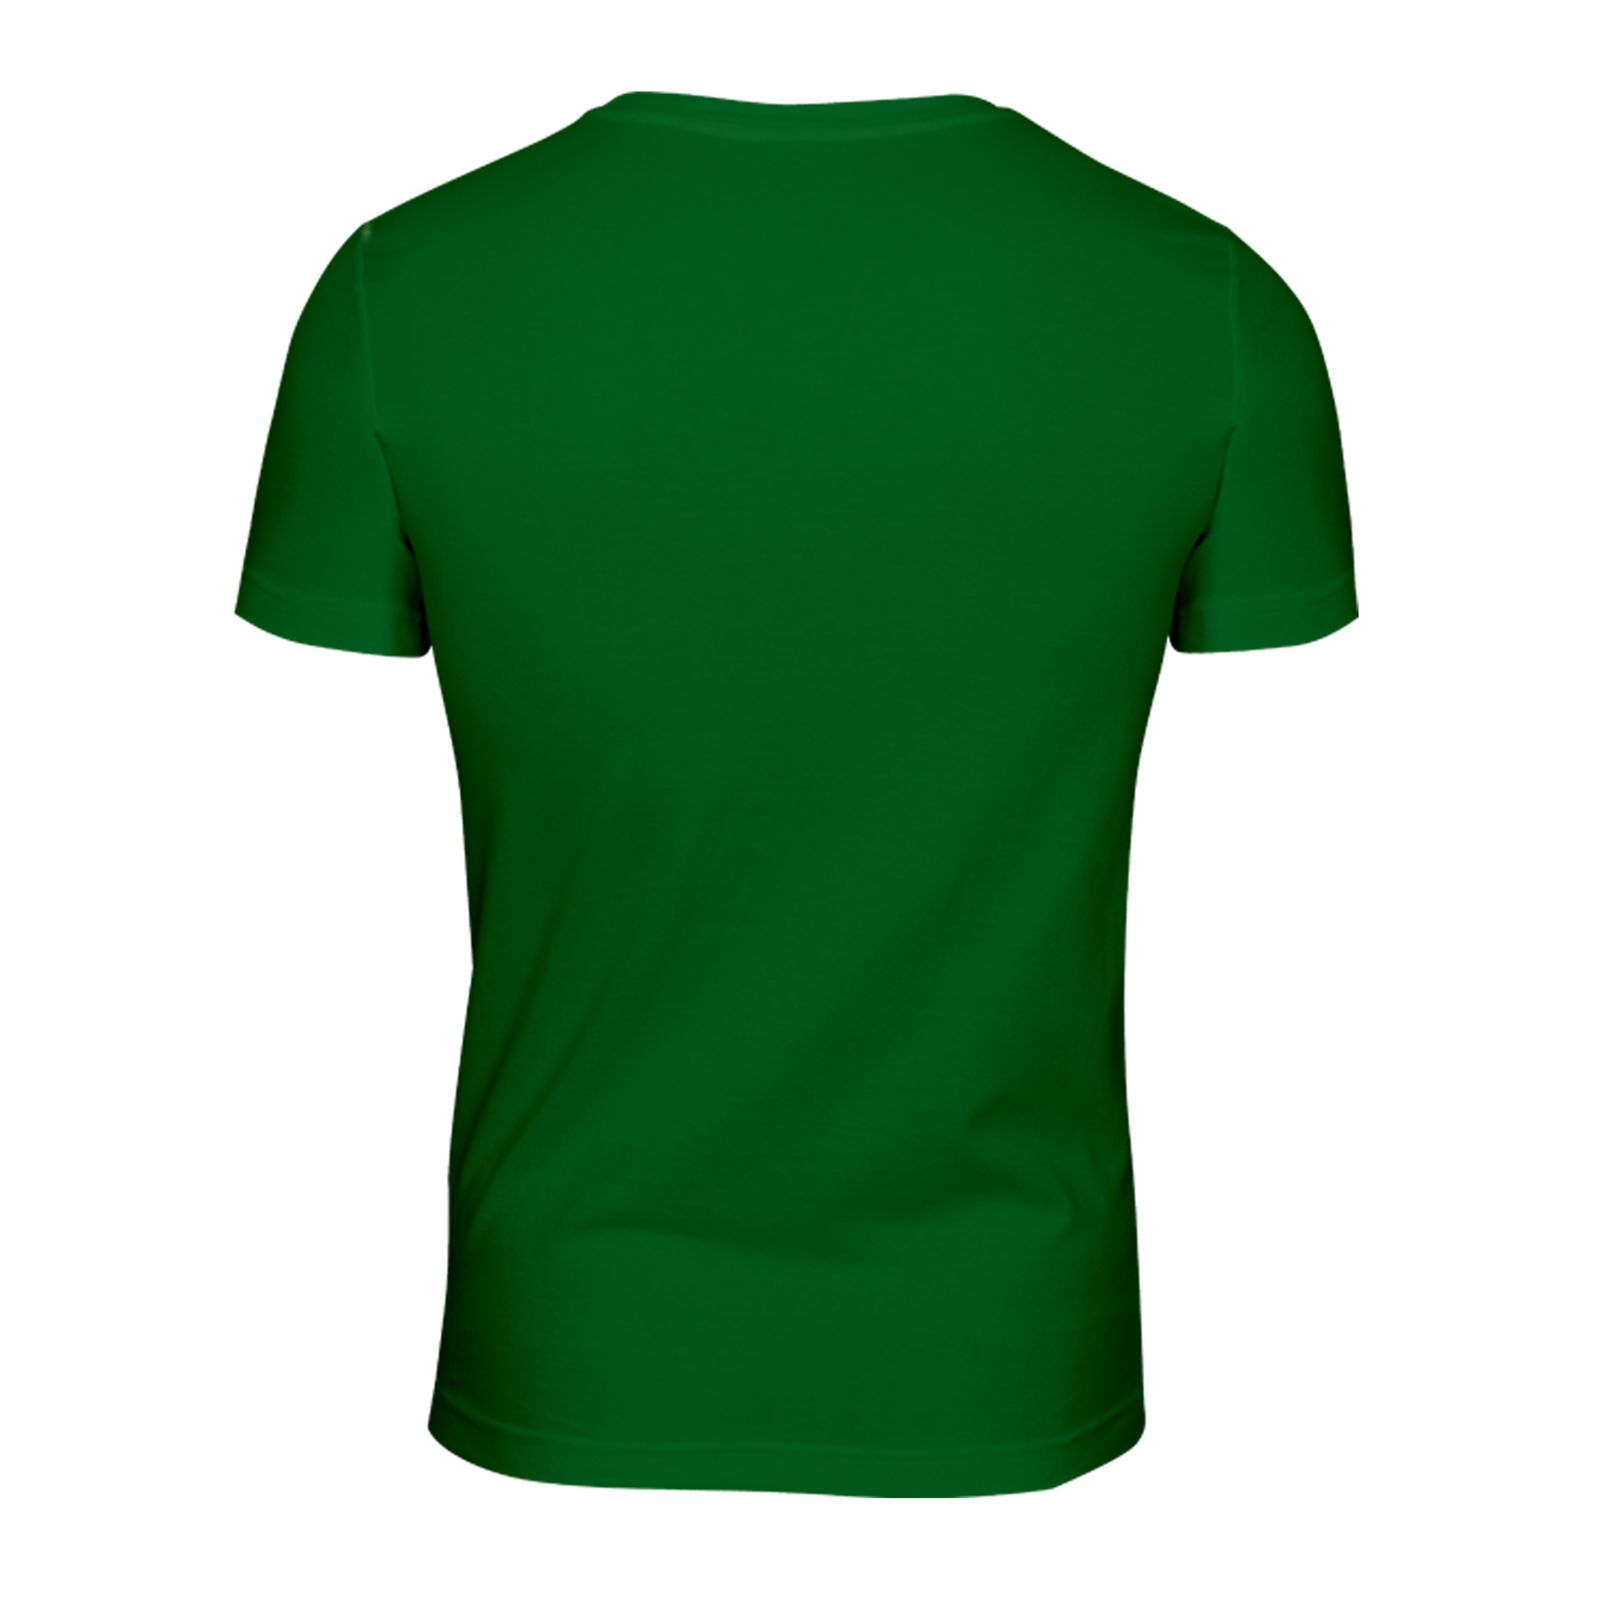 ست تی شرت و شلوار مردانه پاتیلوک مدل کمپ کد 400107 -  - 5